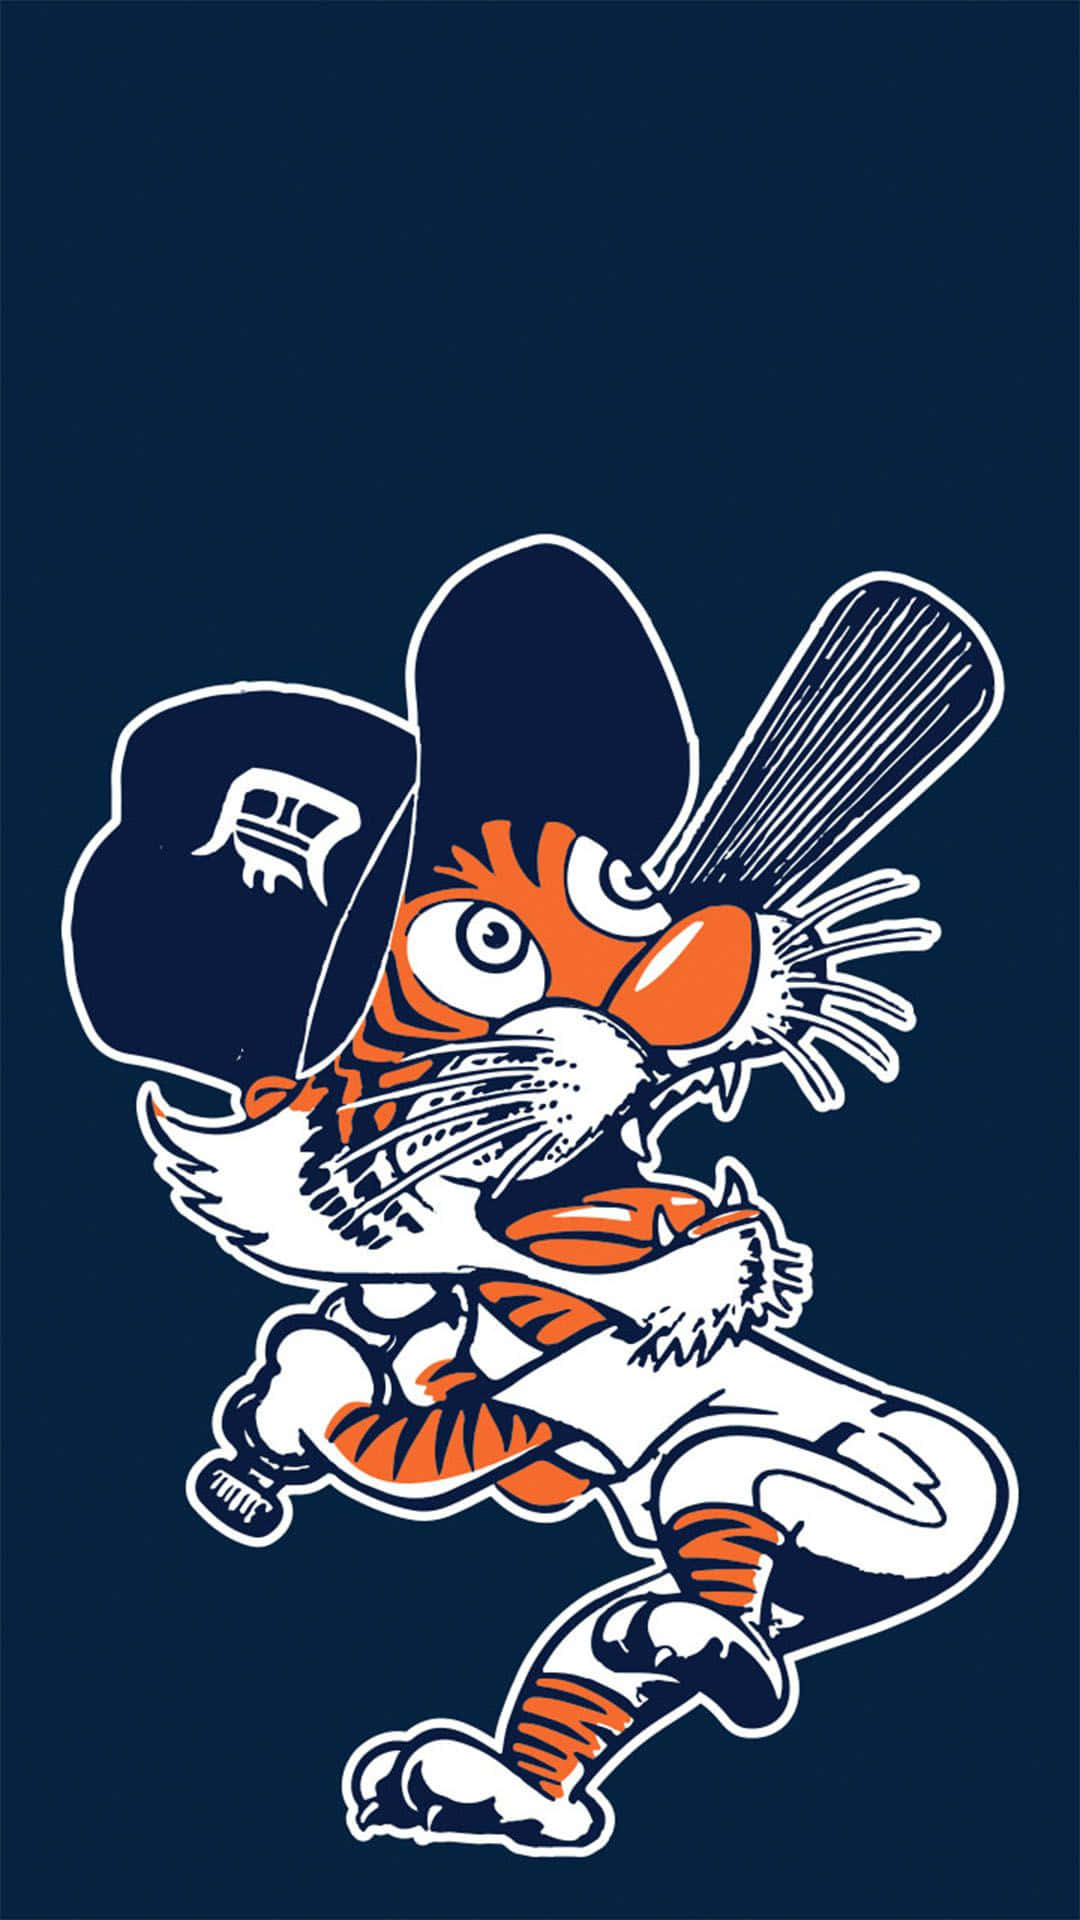 Tassmössamed Detroit Tigers Logotyp. Wallpaper